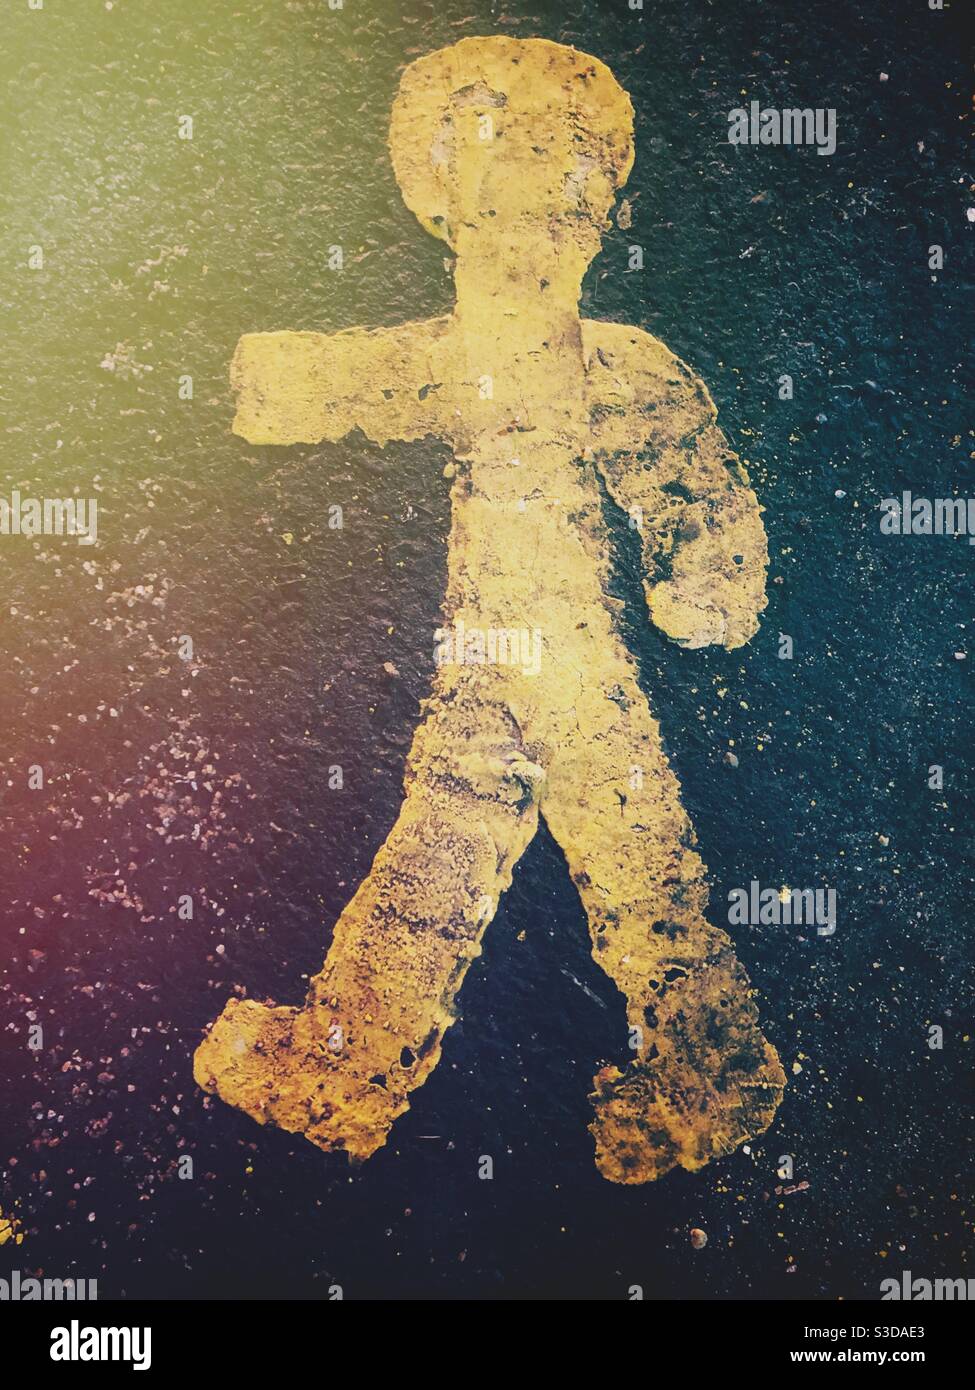 Ein gemalter Stockmann in menschlicher Darstellung auf einem Fußweg Zeigen Sie uns einen sicheren Ort, um die Straße zu überqueren und zu Fuß zu gehen Ins Licht Stockfoto